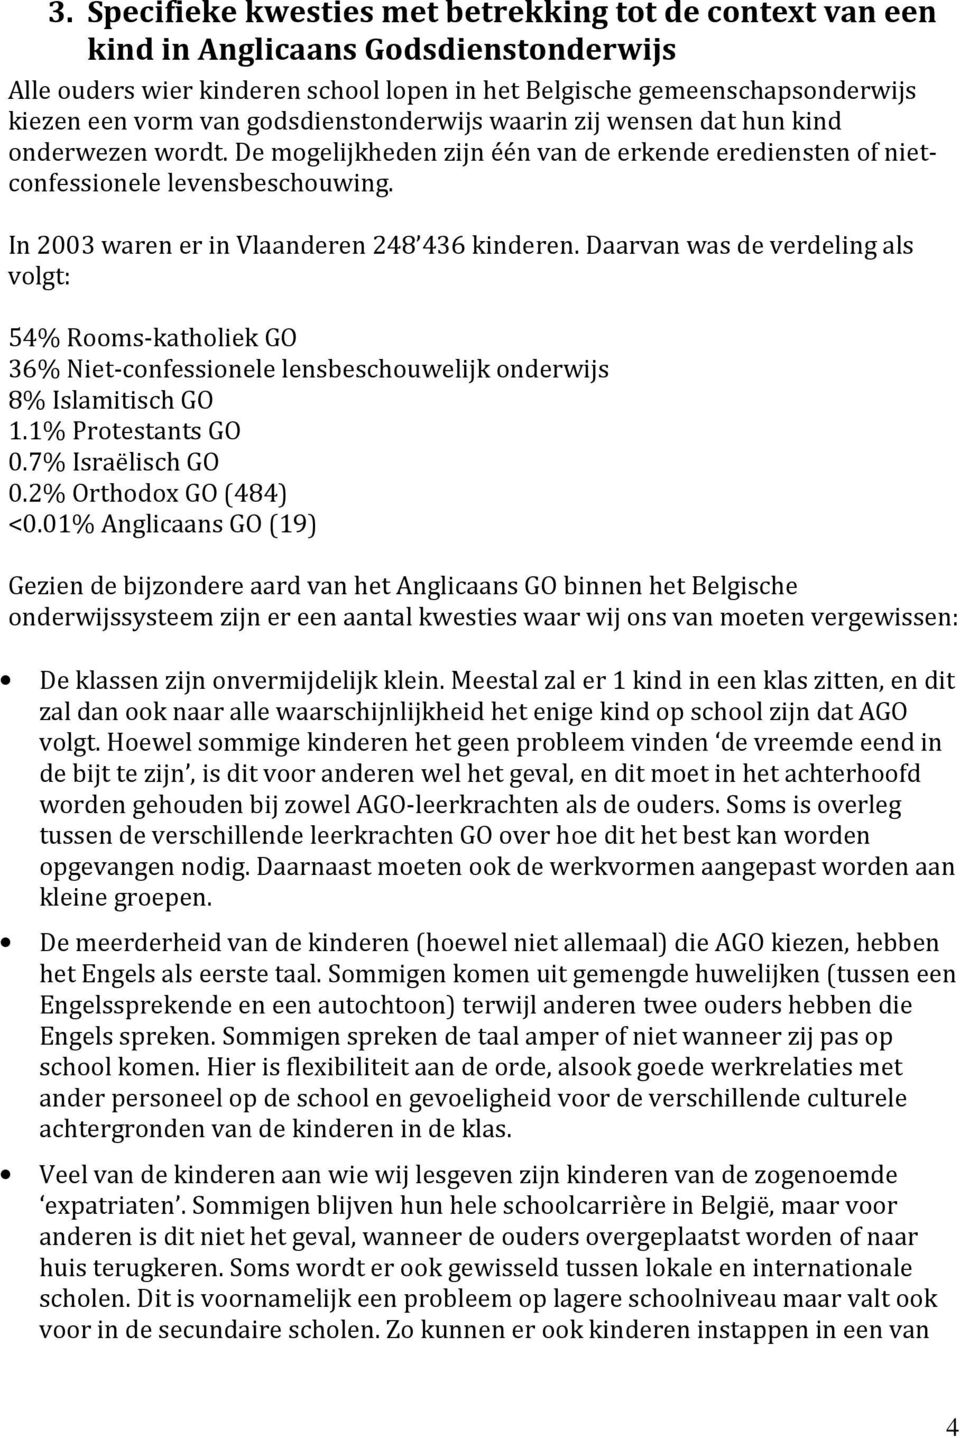 In 2003 waren er in Vlaanderen 248 436 kinderen. Daarvan was de verdeling als volgt: 54% Rooms-katholiek GO 36% Niet-confessionele lensbeschouwelijk onderwijs 8% Islamitisch GO 1.1% Protestants GO 0.